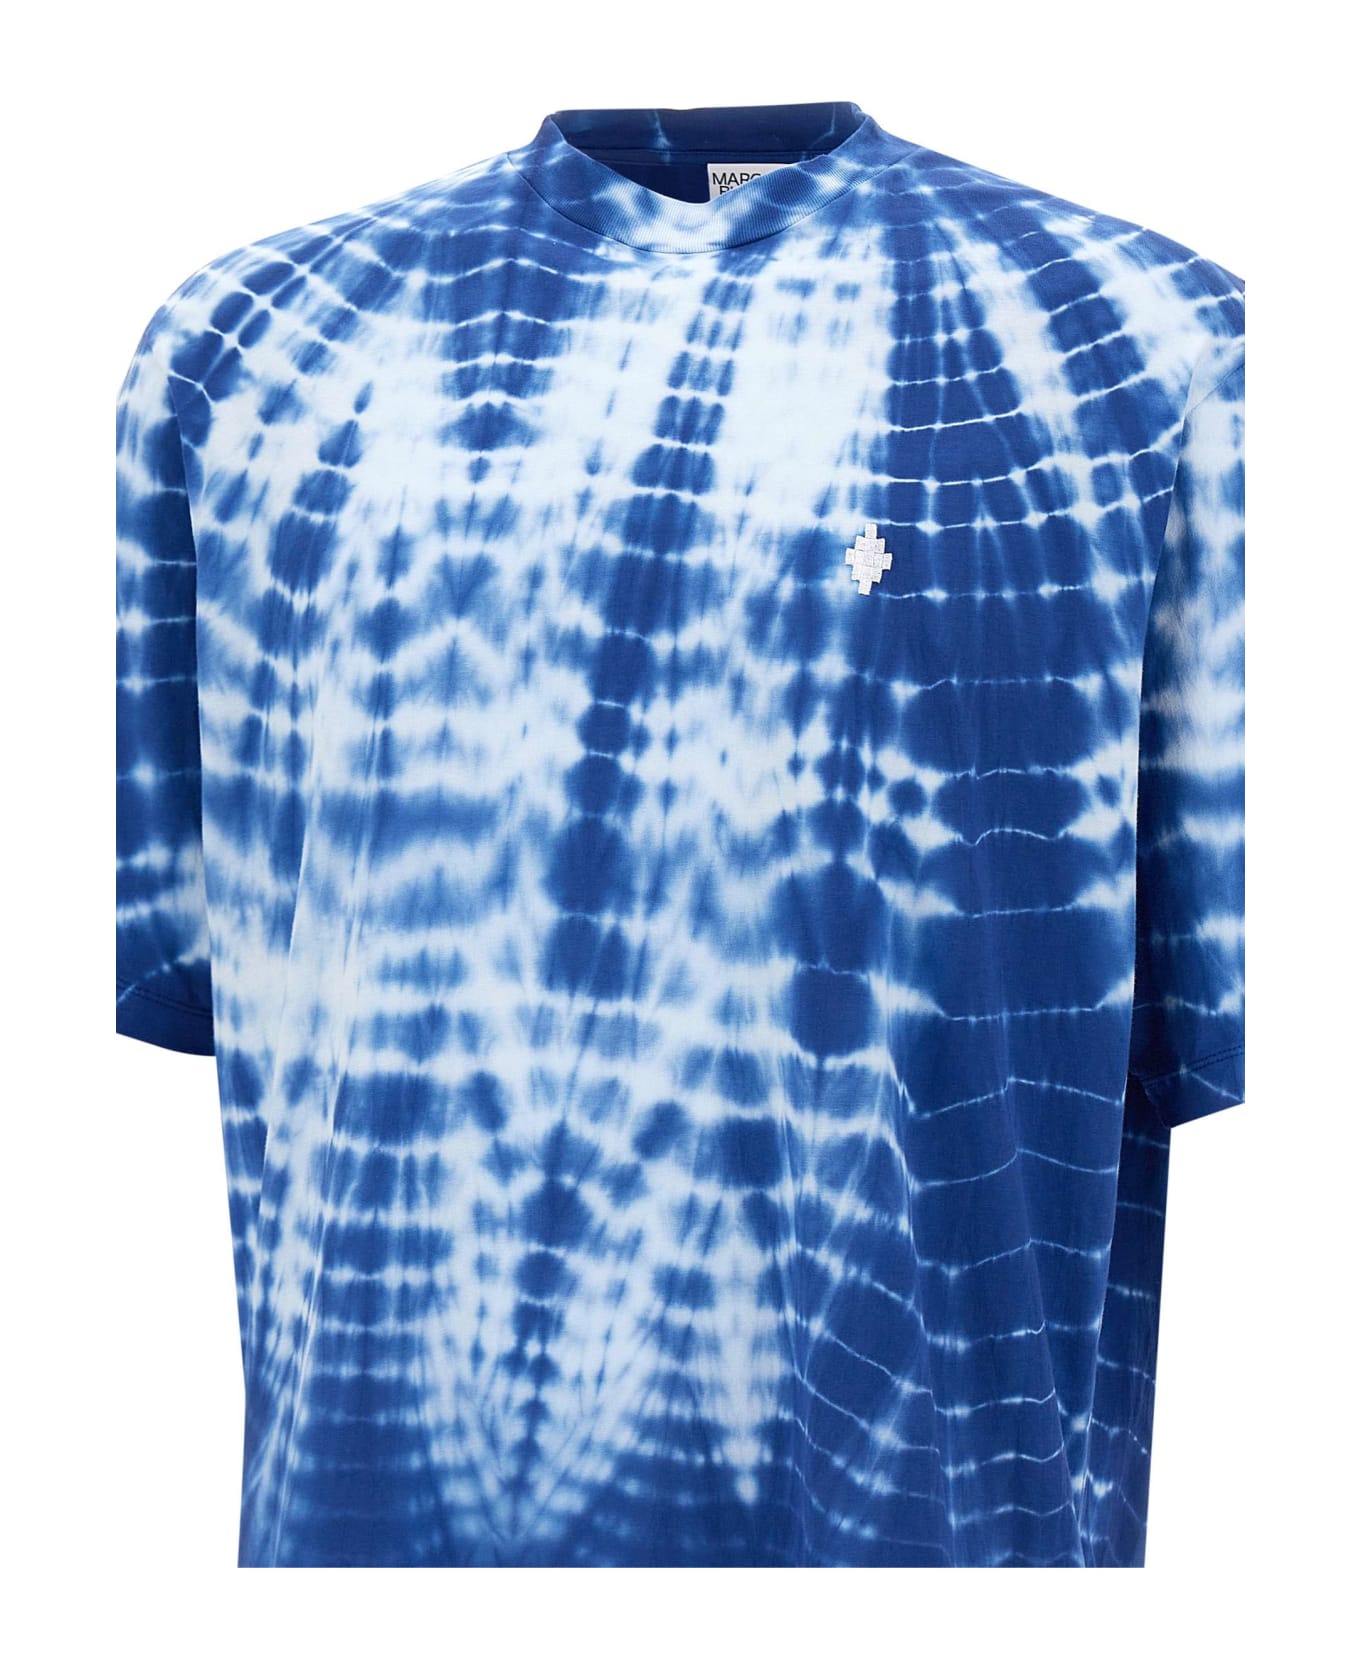 Marcelo Burlon "aop Soundwaves Over Tee" Cotton T-shirt - BLUE/WHITE